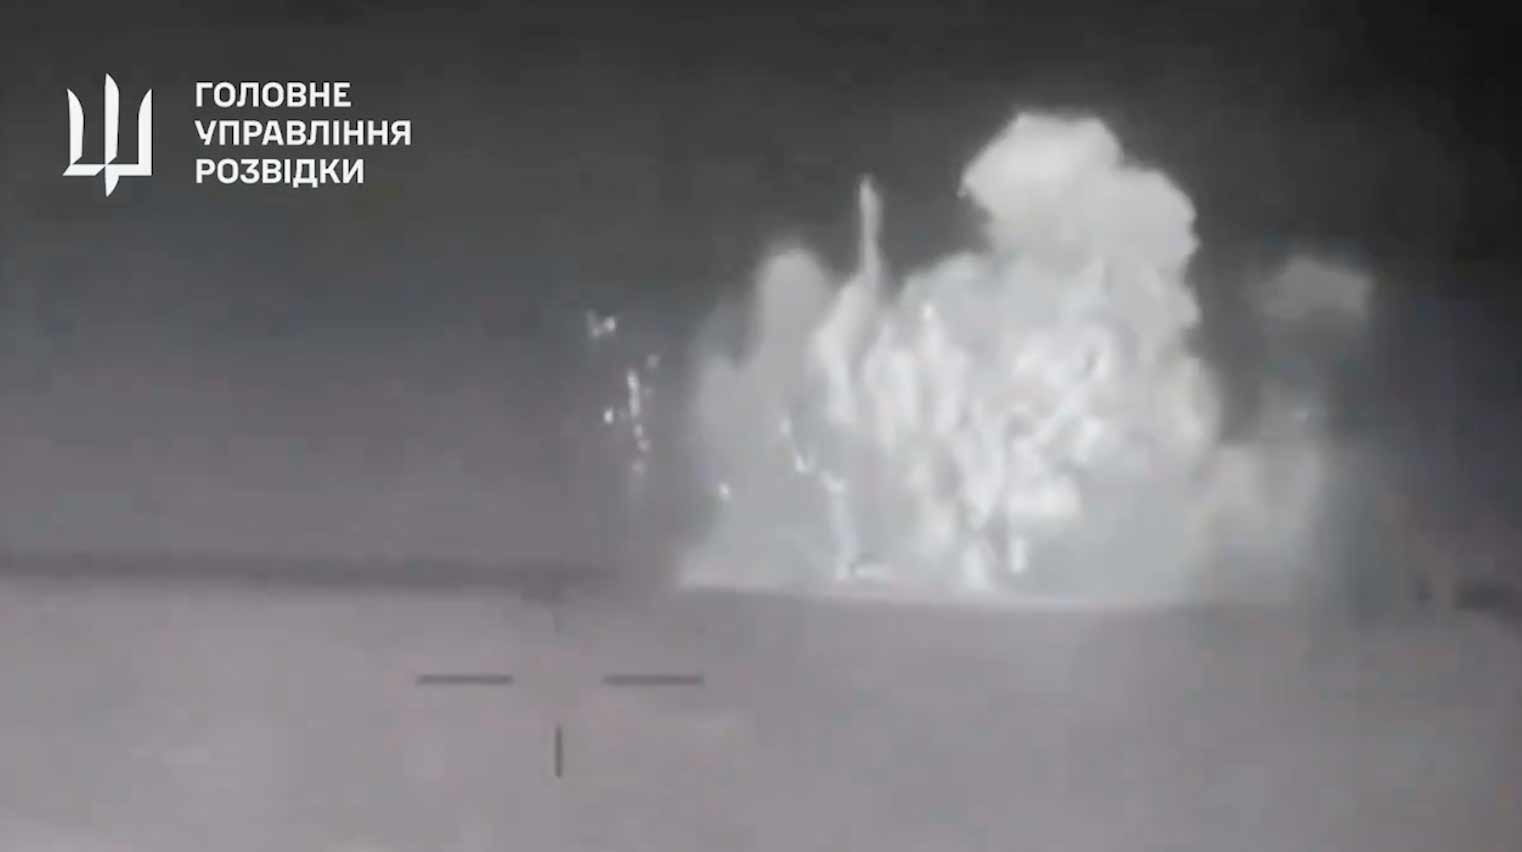 Novo vídeo mostra explosão que afundou o navio russo Sergey Kotov. Reprodução Twitter @wartranslated